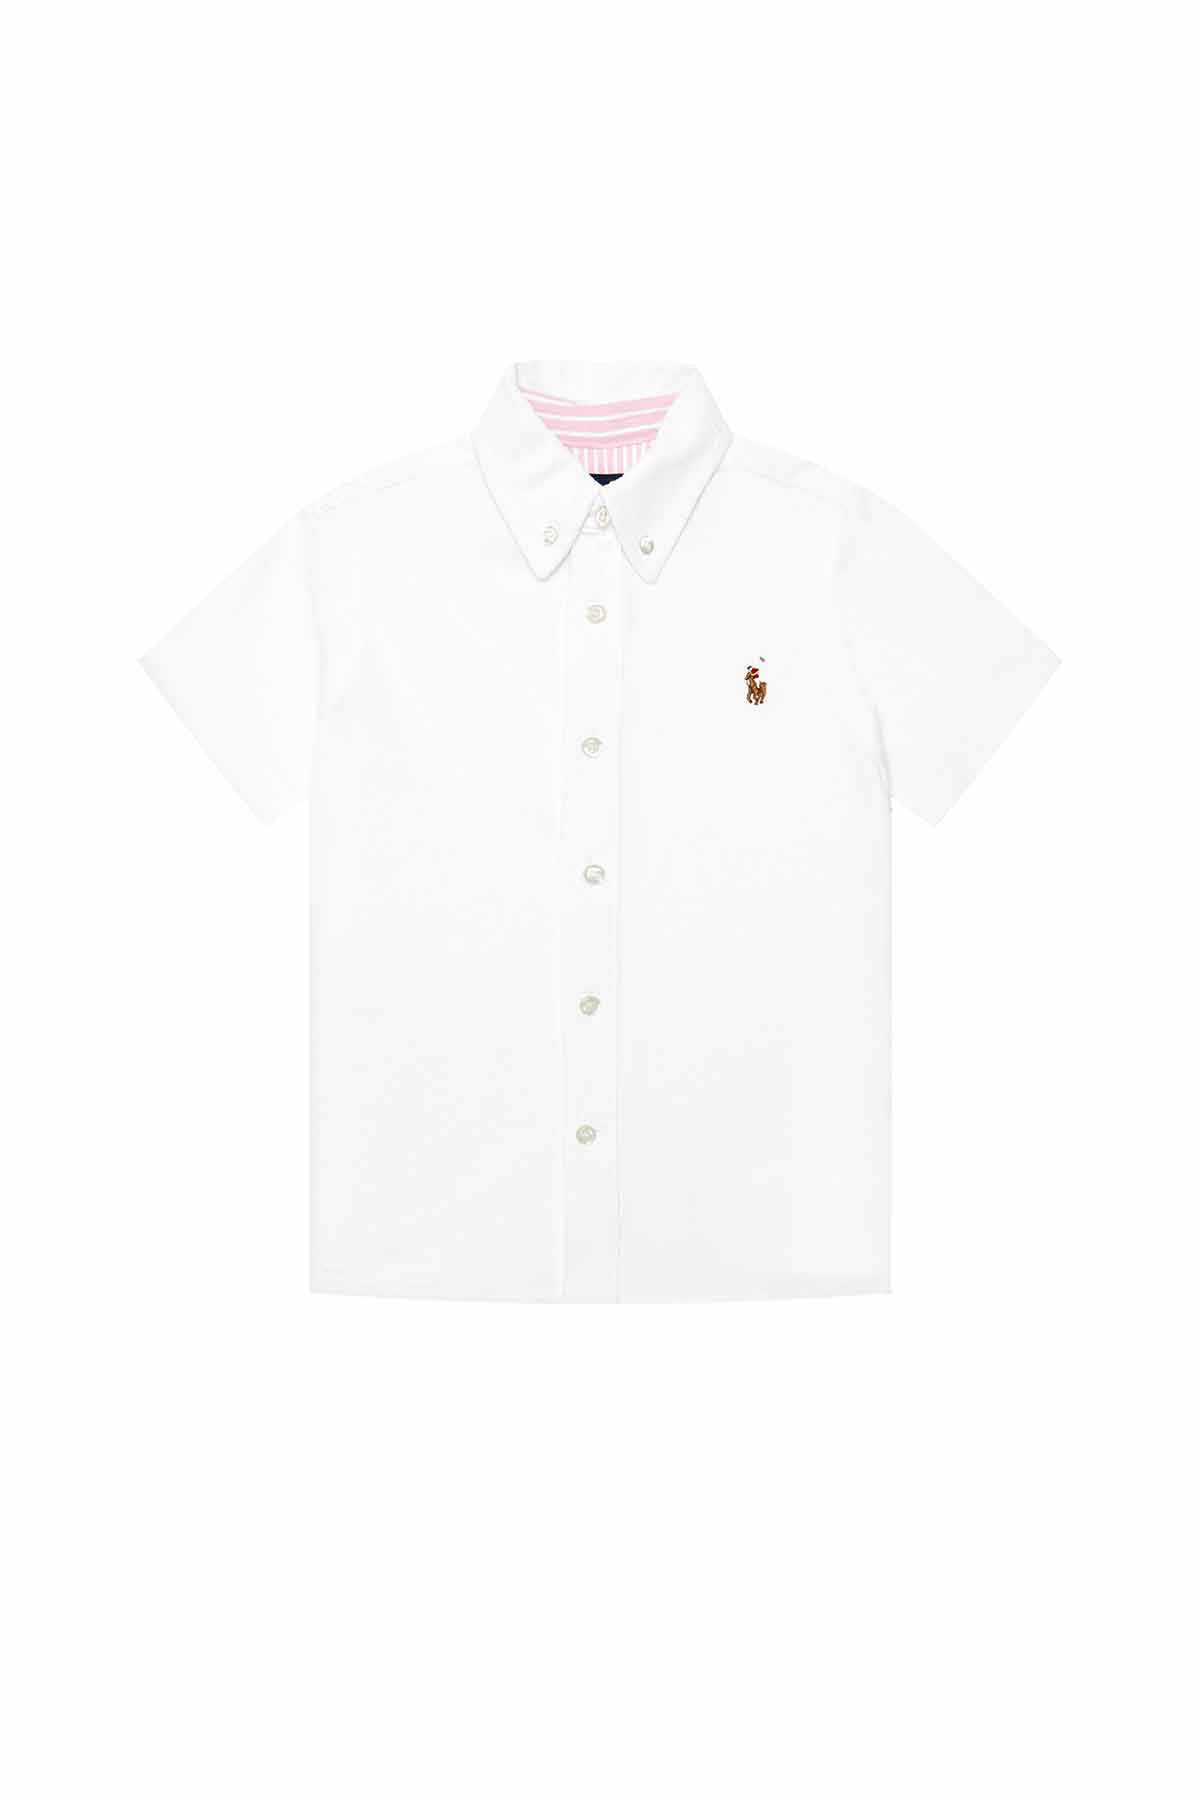 Polo Ralph Lauren 5-7 Yaş Erkek Çocuk Kısa Kollu Gömlek-Libas Trendy Fashion Store